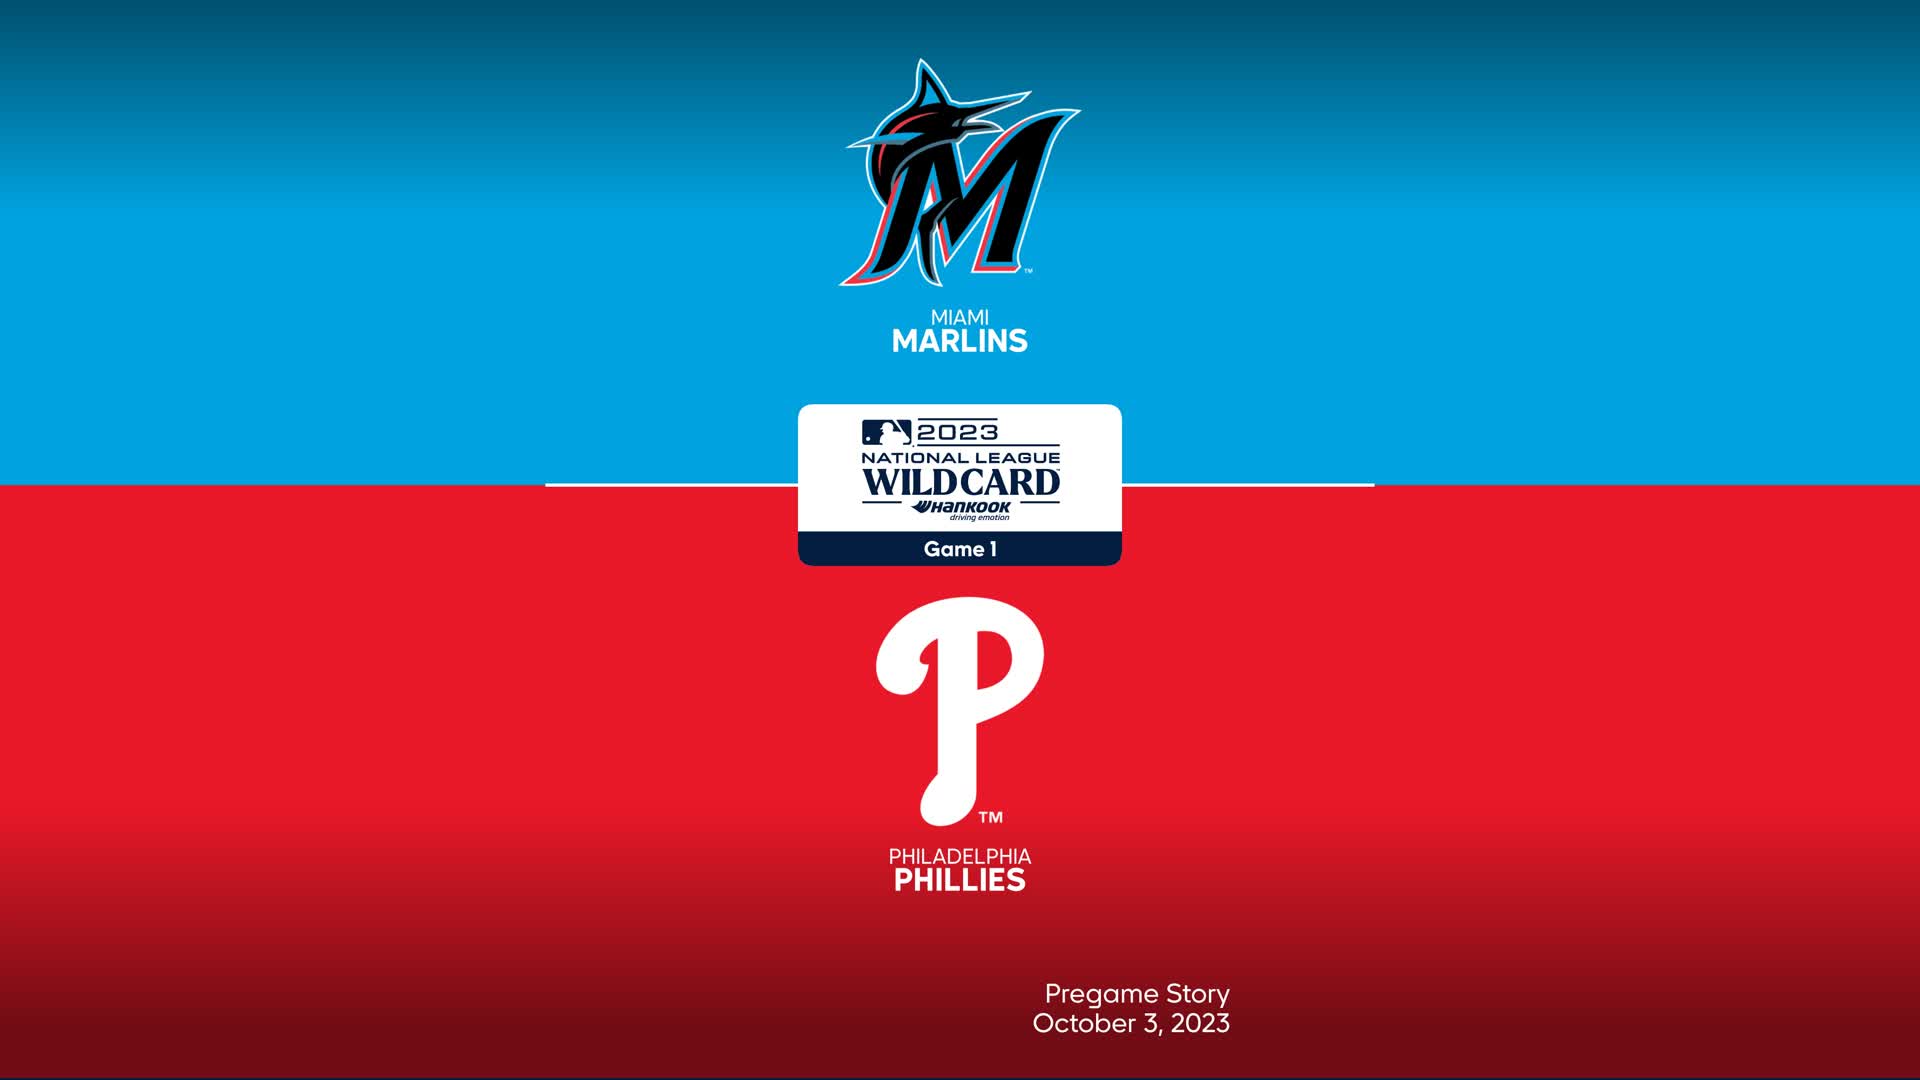 Marlins-Phillies 2023 Wild Card Series Game 1 FAQ